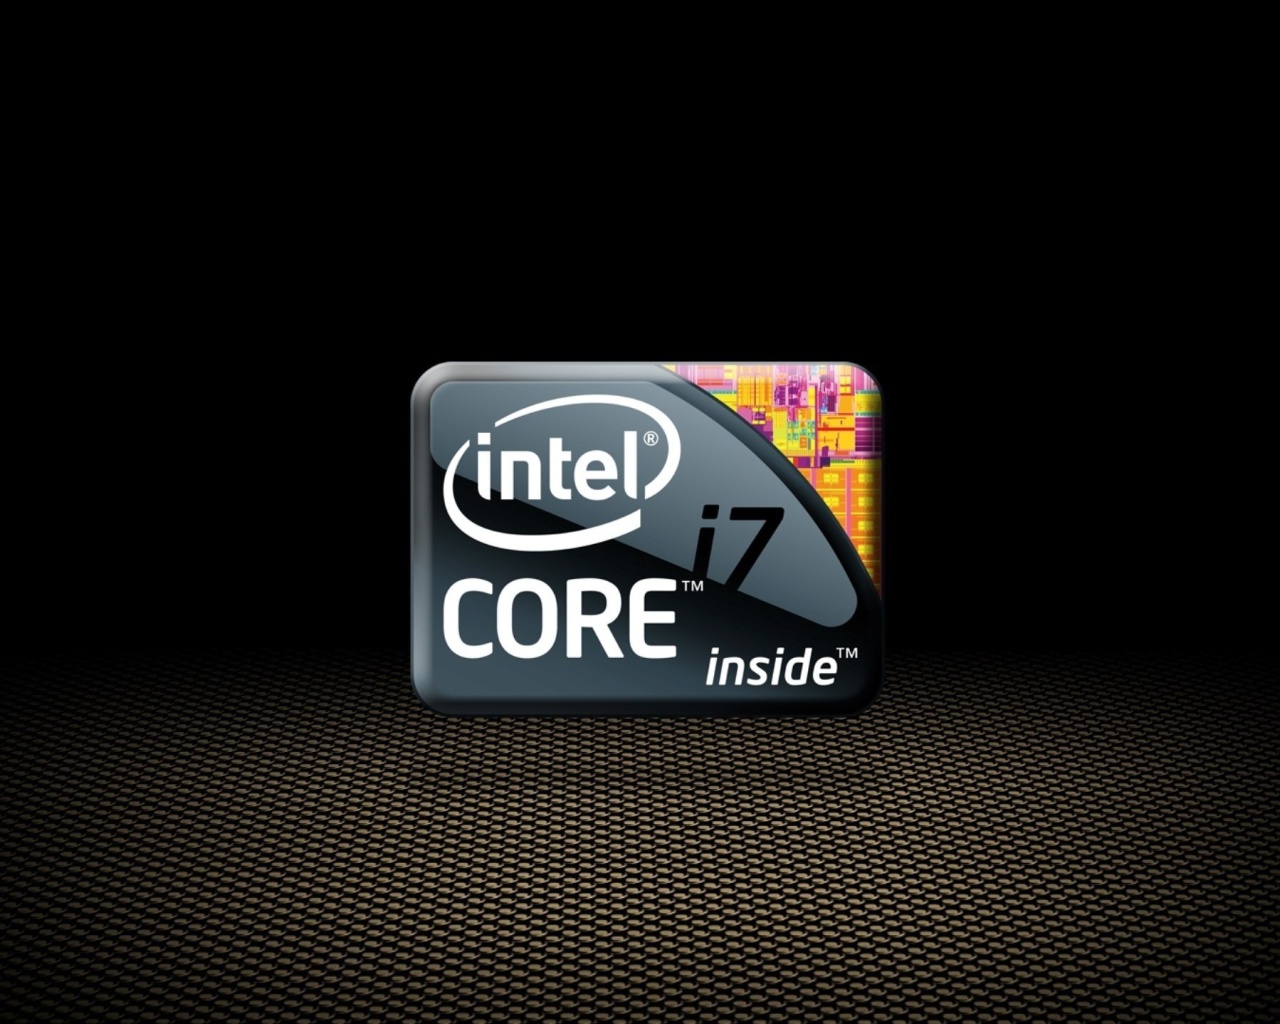 Intel Core i7 CPU wallpaper 1280x1024